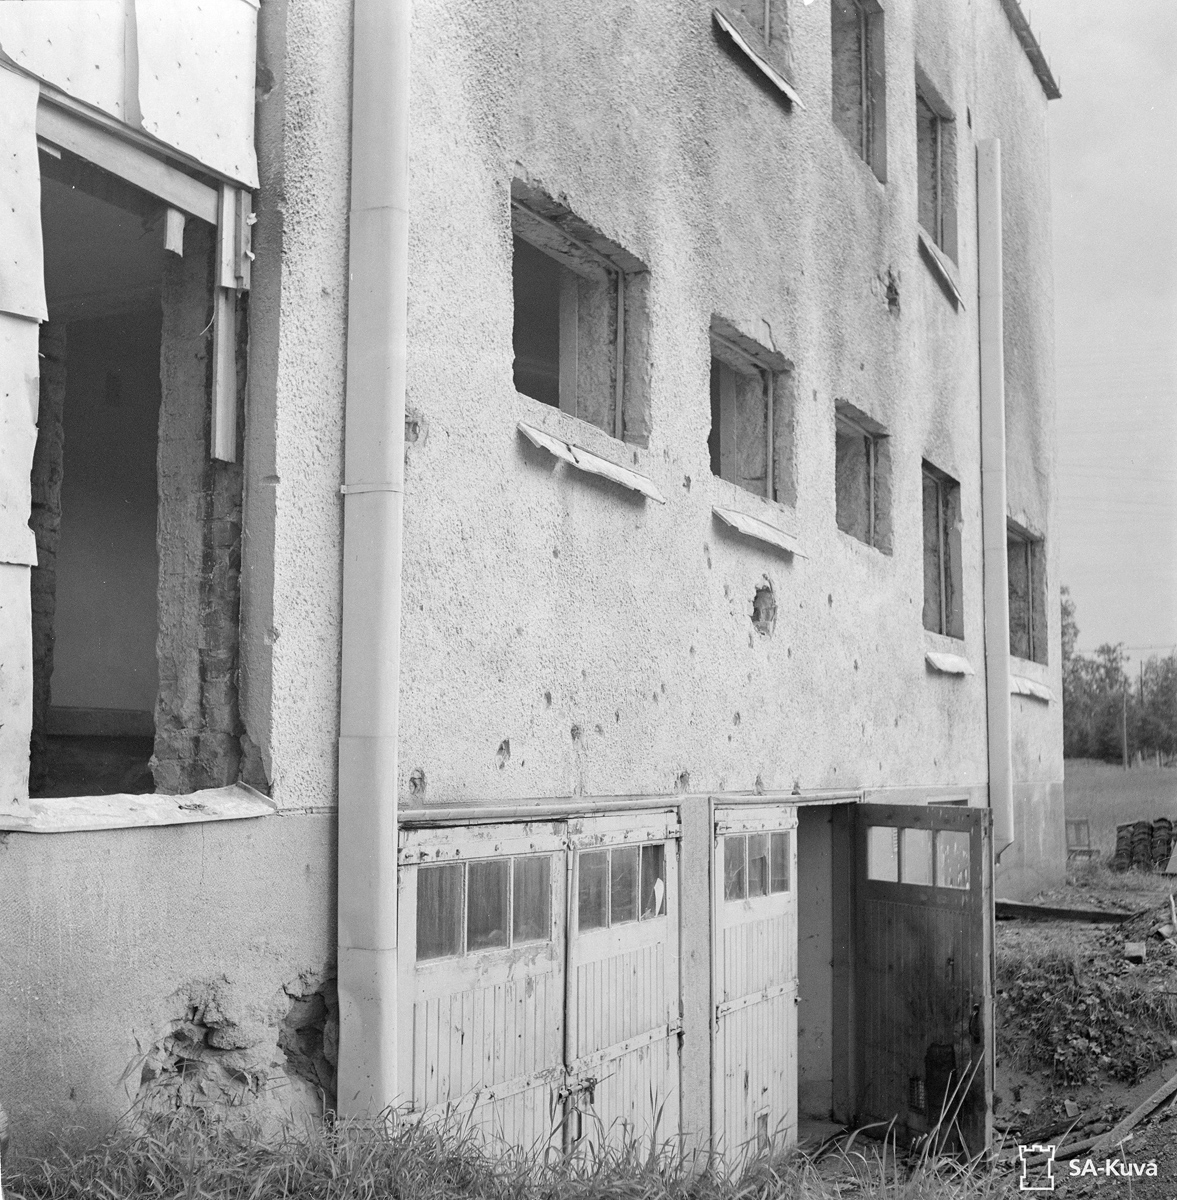 August 12, 1943. Jaakkima. The commune office